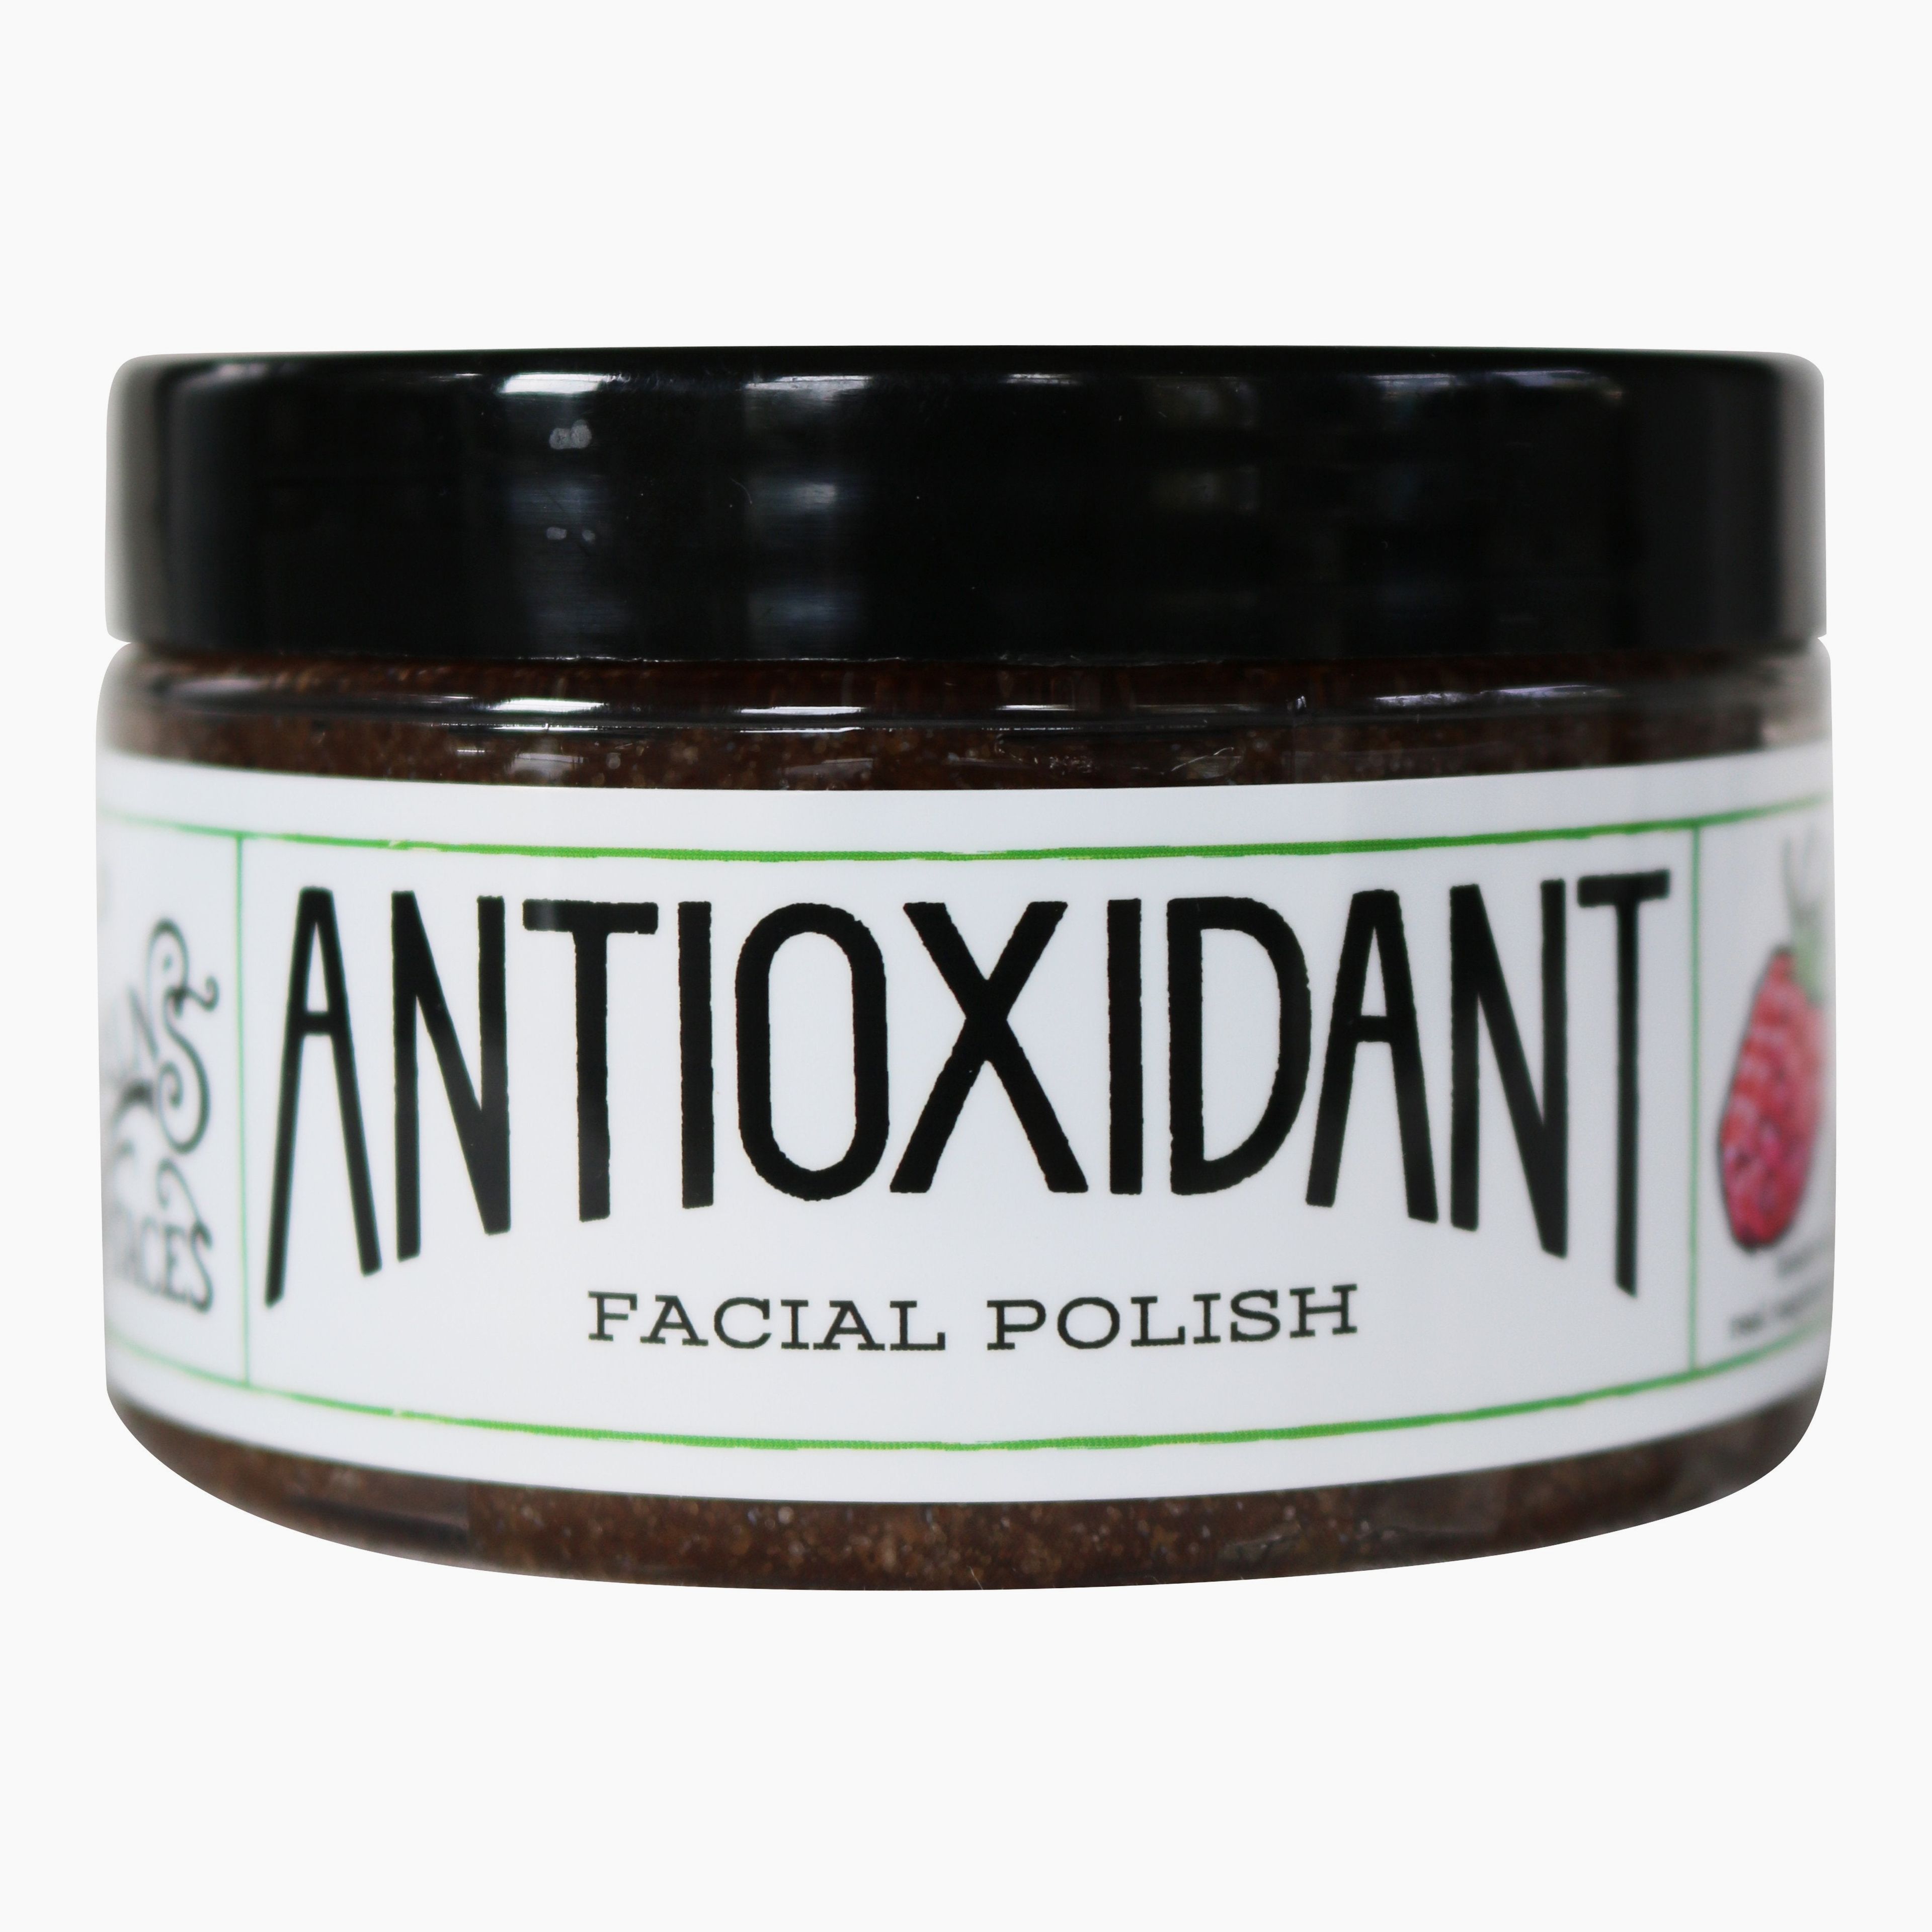 Antioxidant Facial Polish